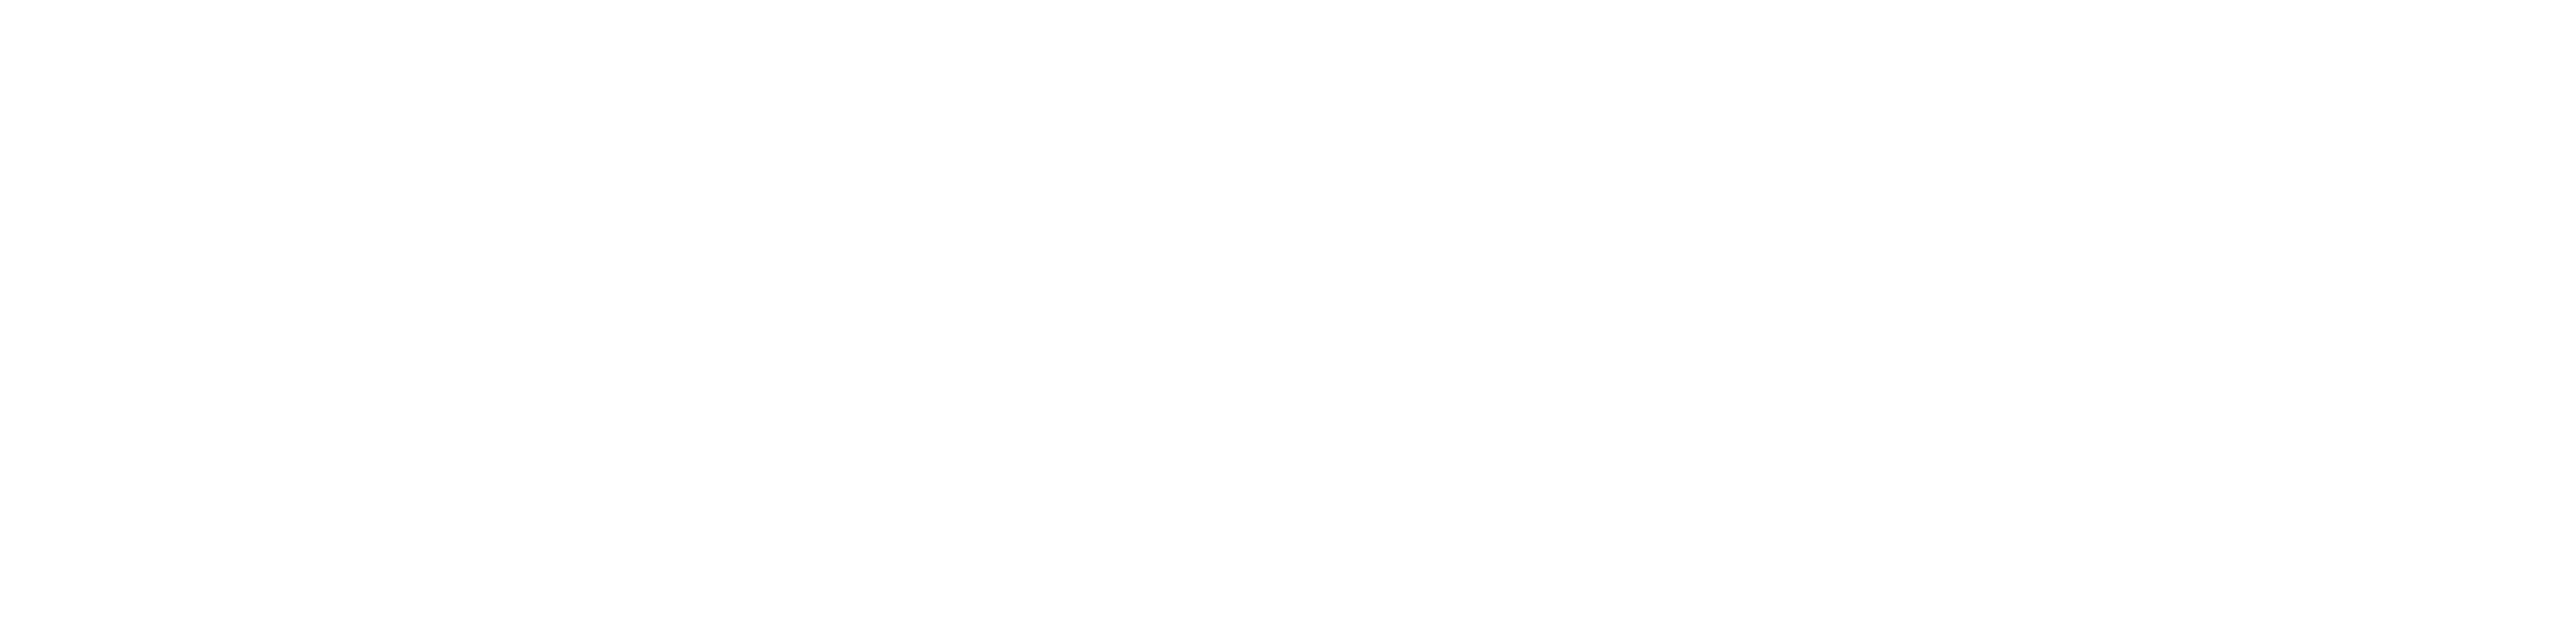 crypto coin show logo